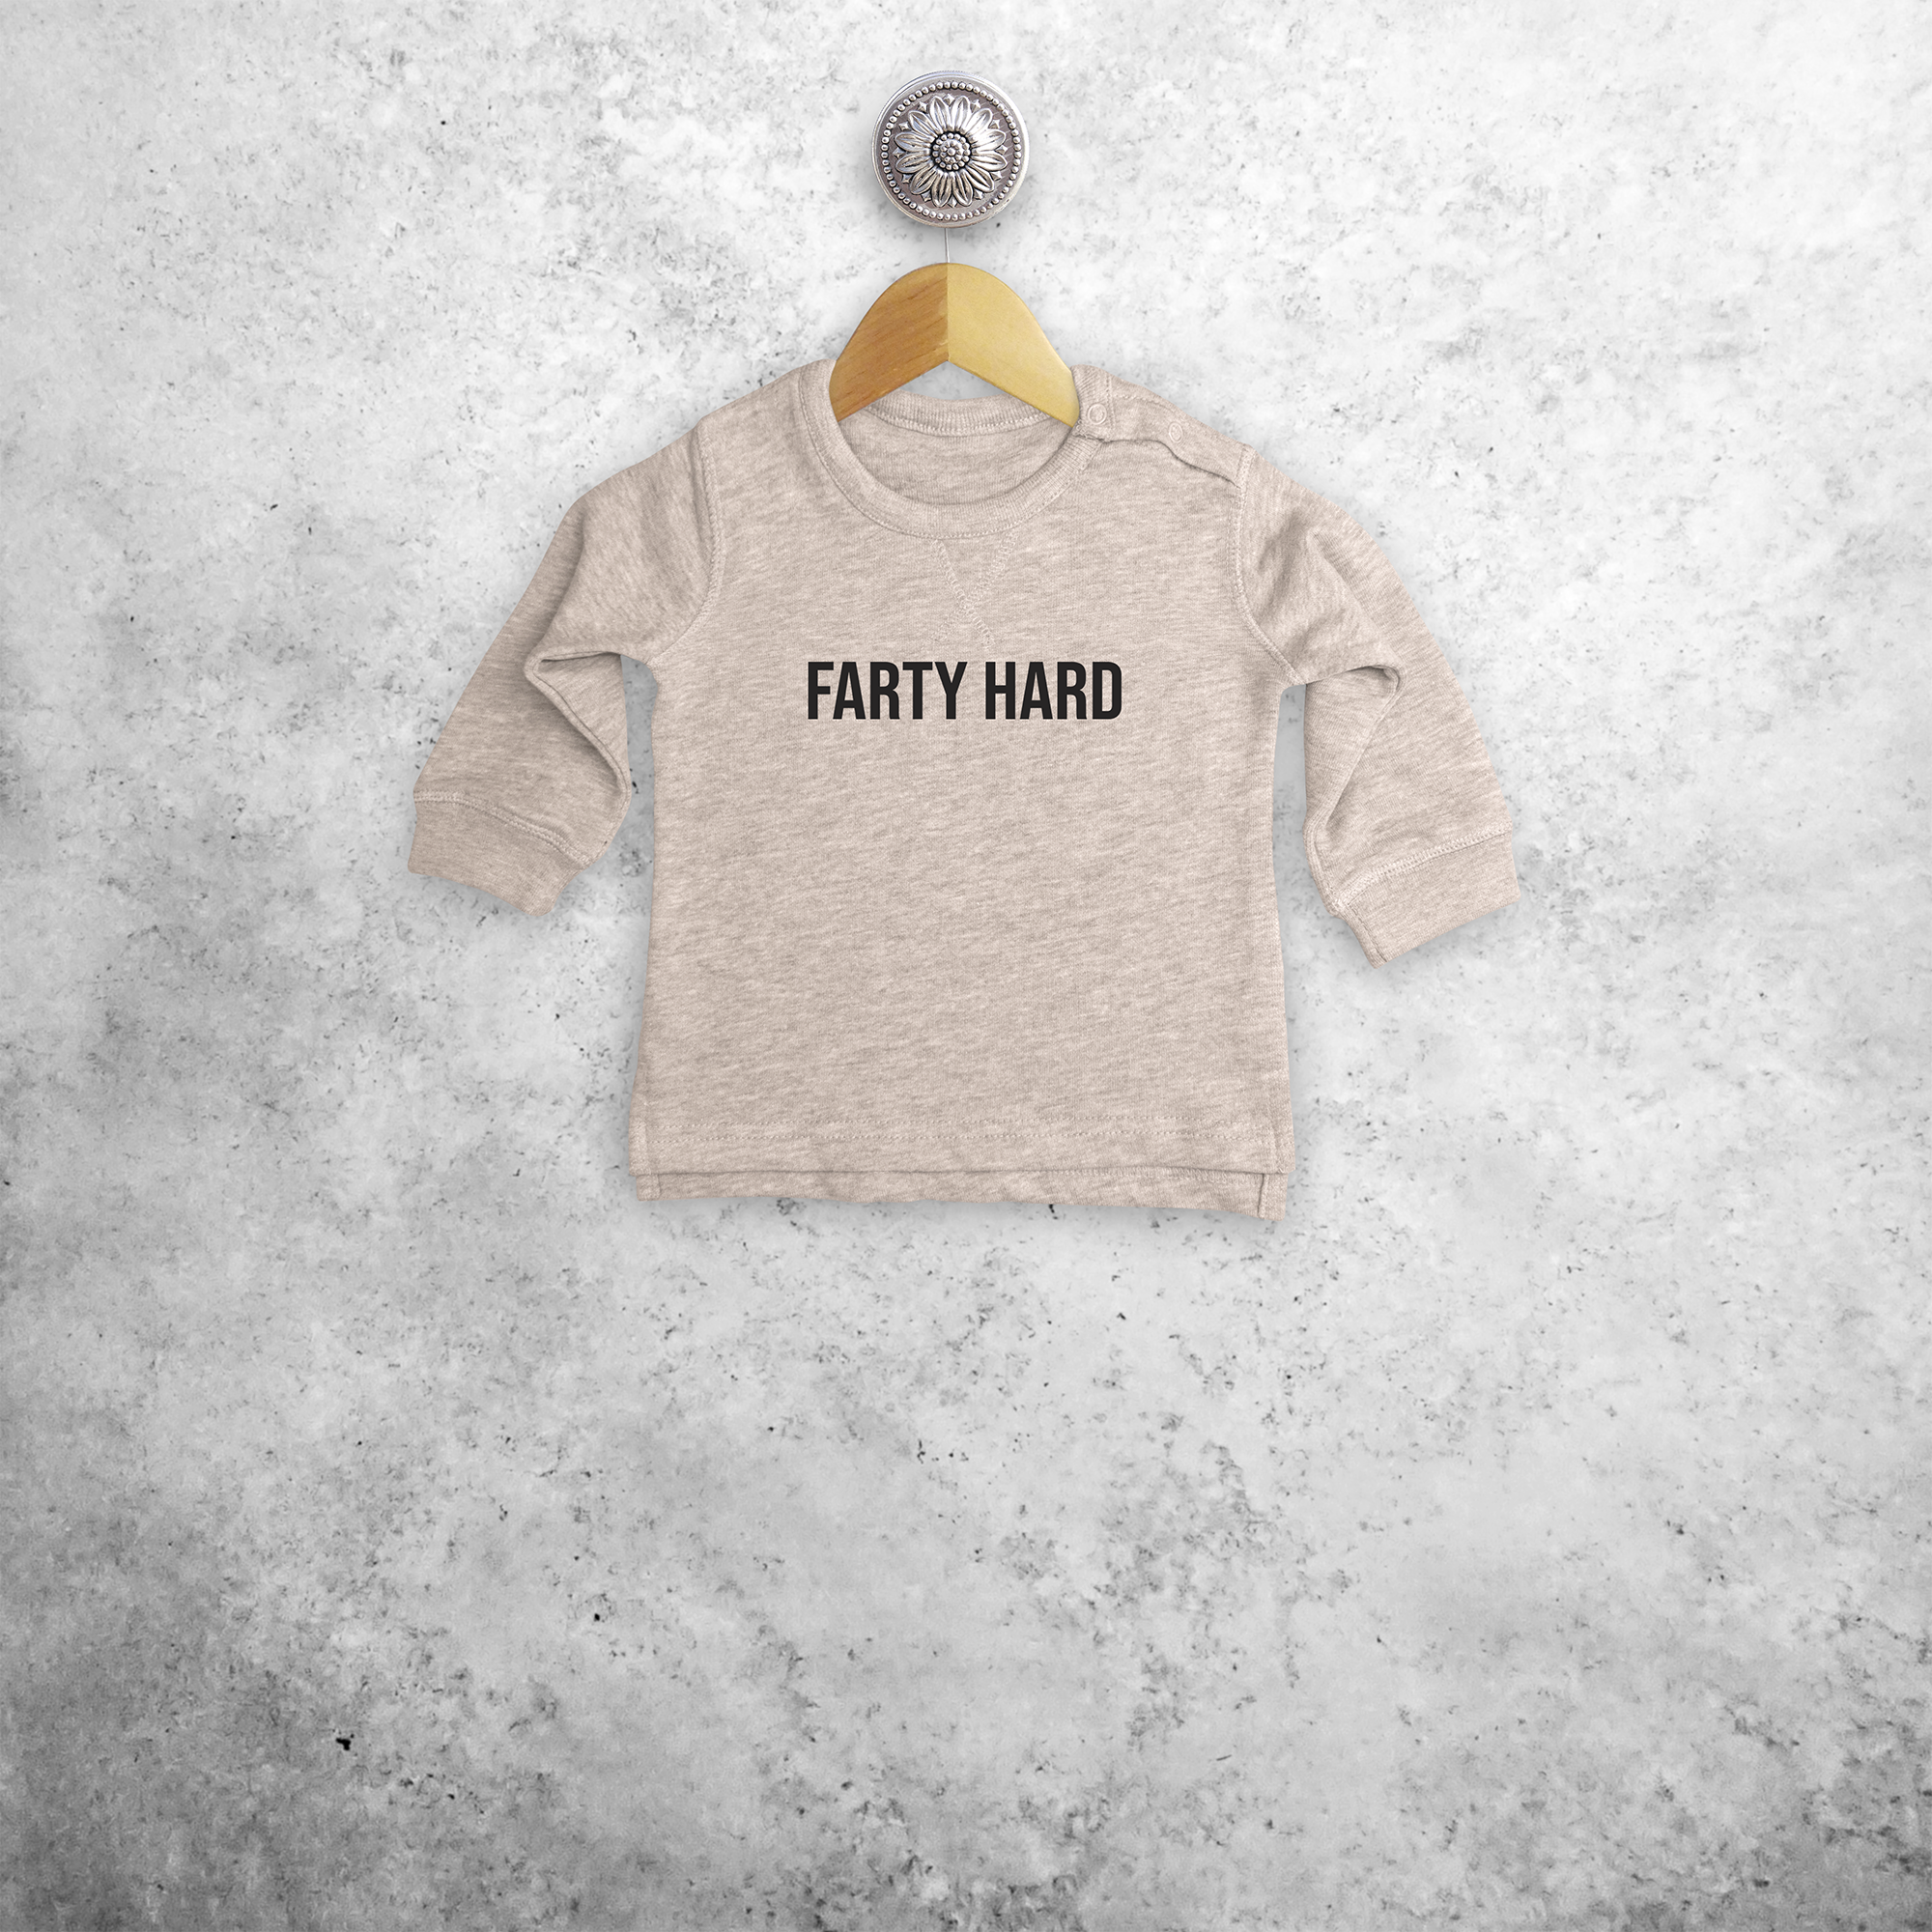 'Farty hard' baby trui